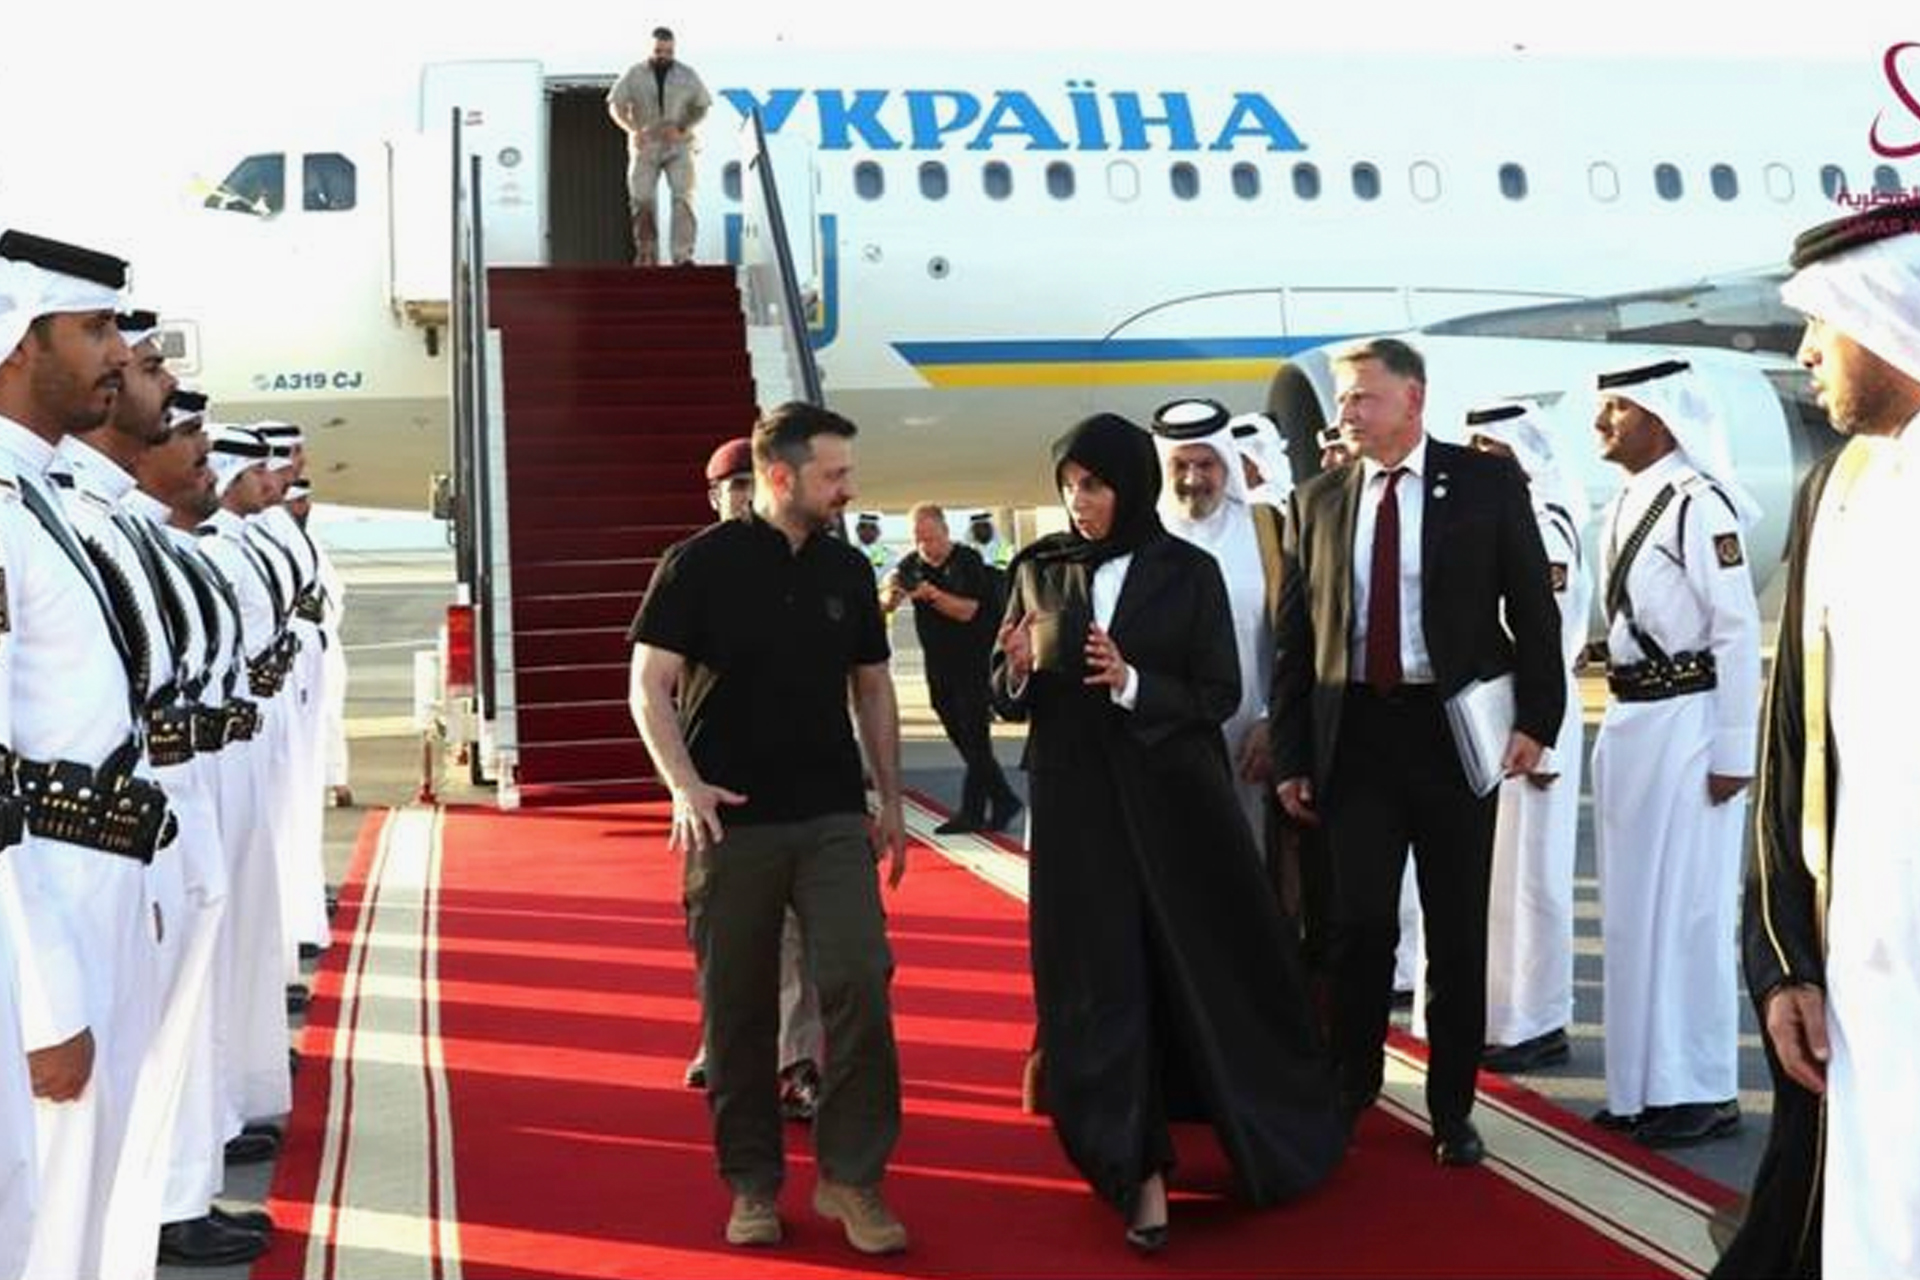 زيلينسكي في الدوحة لإجراء محادثات مع أمير قطر | أخبار – البوكس نيوز